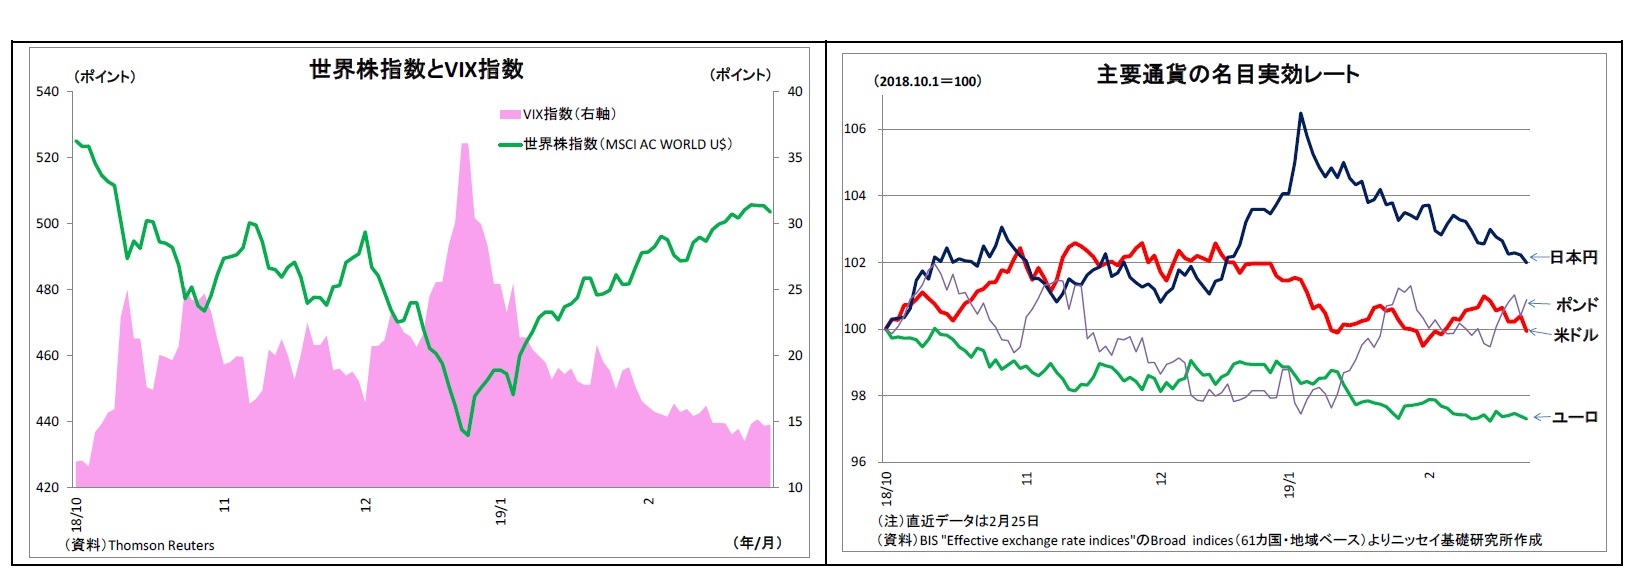 世界株指数とVIX指数/主要通貨の名目実効レート